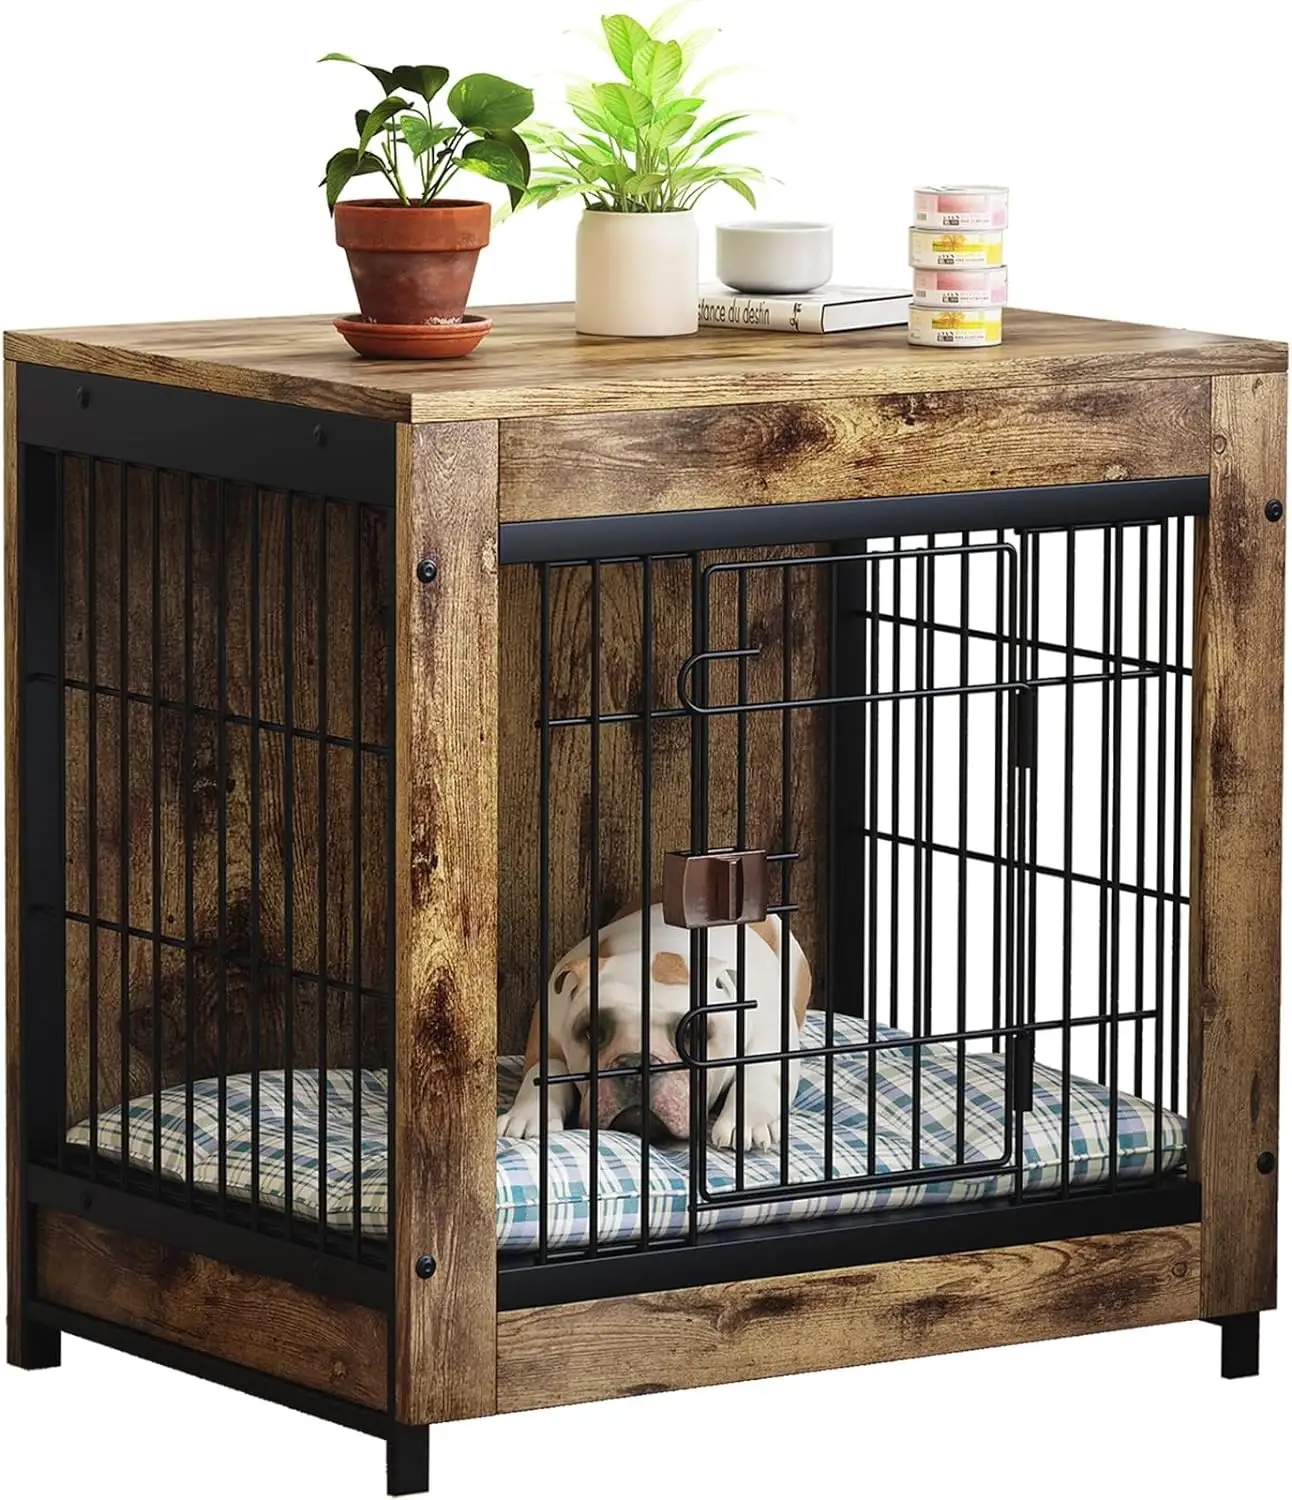 ארגז כלבים רהיטים kennel סיום שולחן מקורה עם כלב עץ מחמד סיטוני